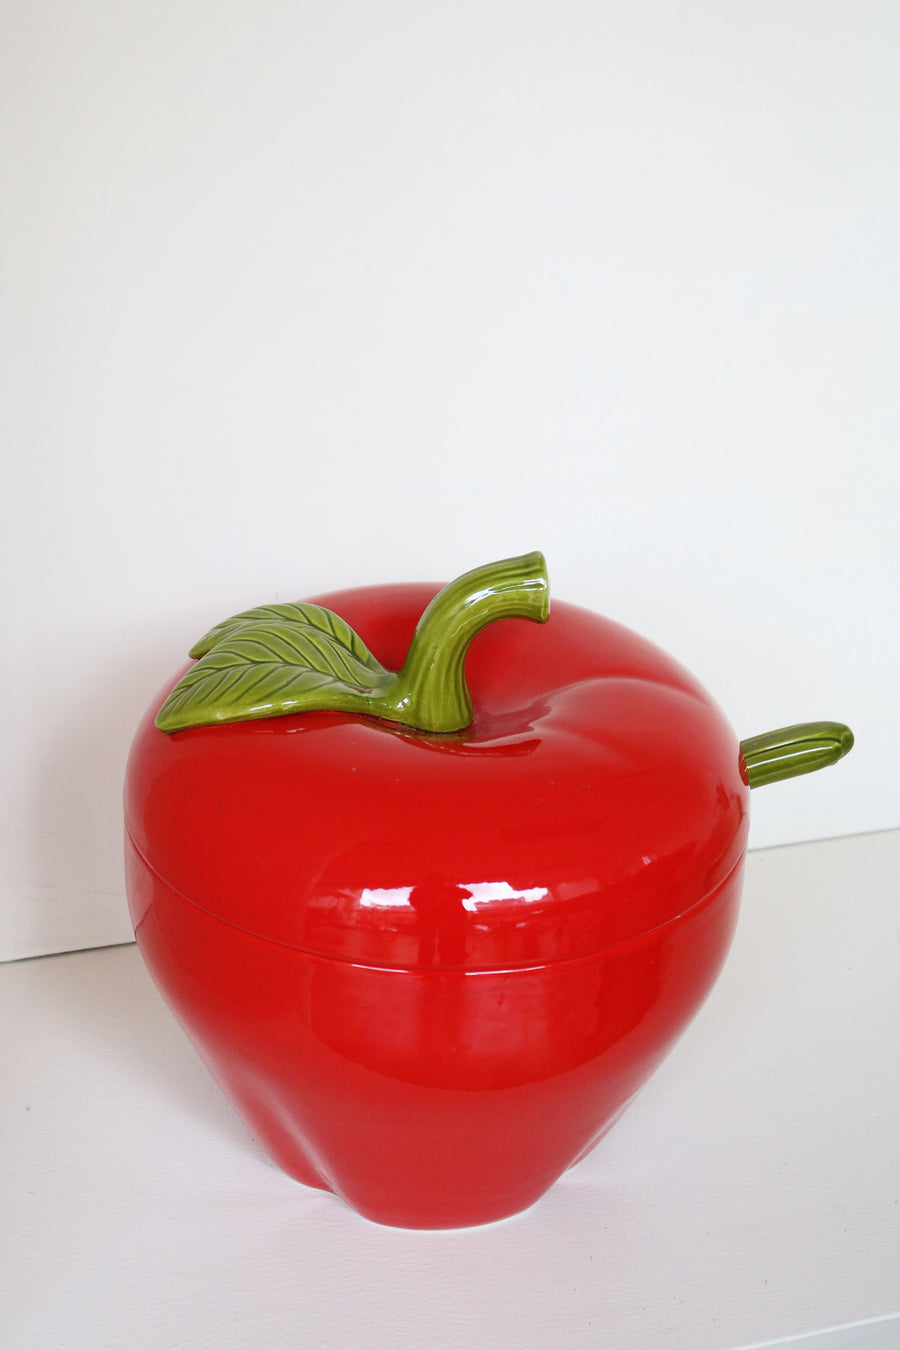 soepterrine tomaat